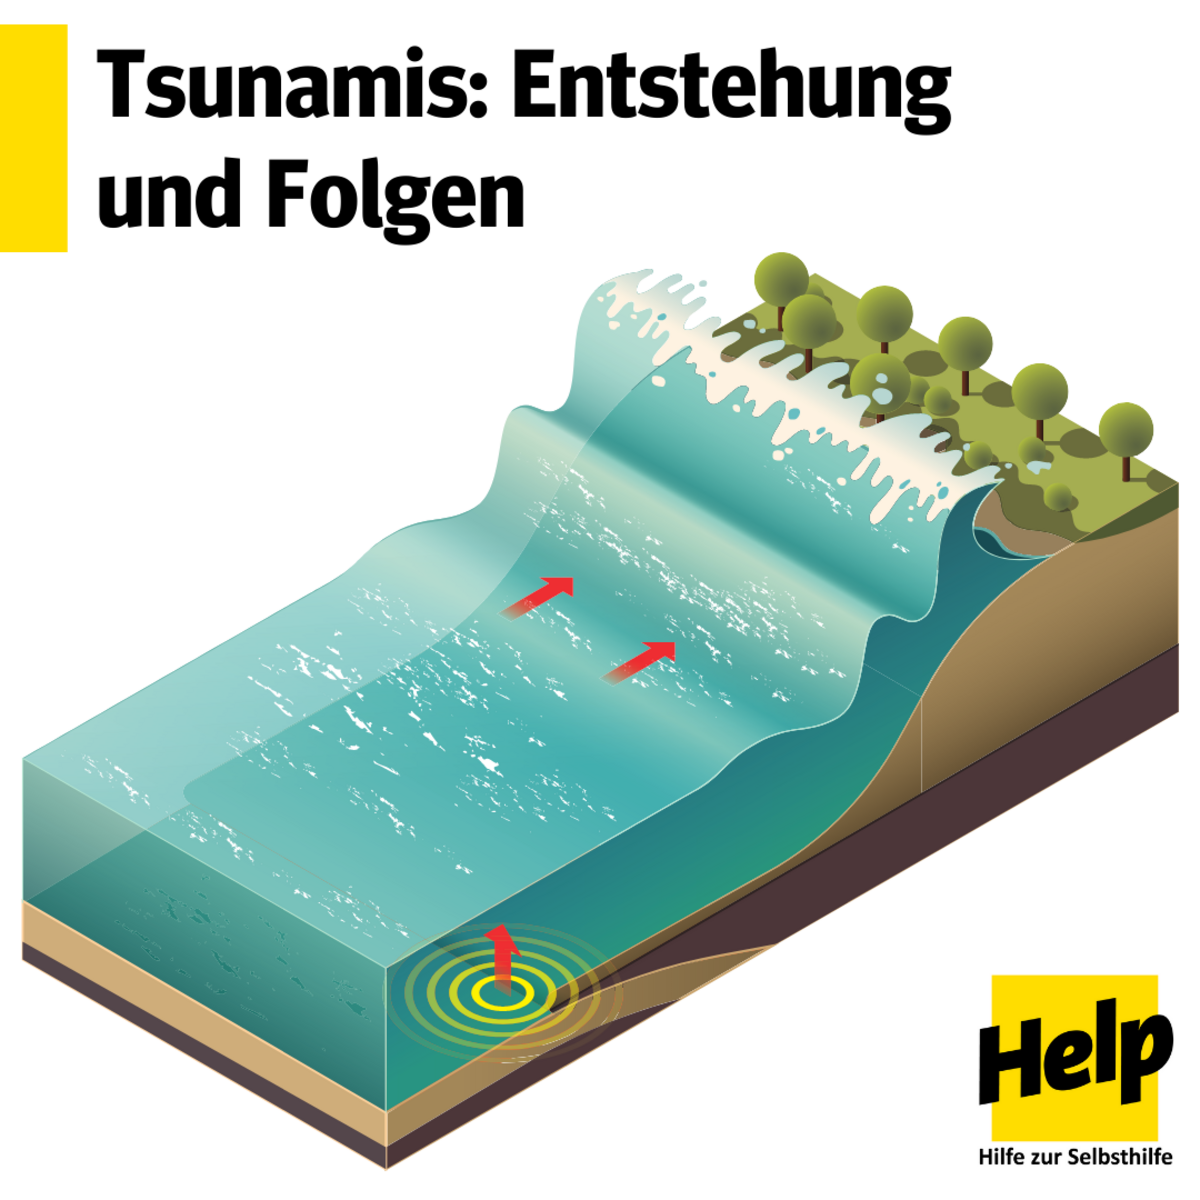 Tsunamis: Entstehung und Folgen